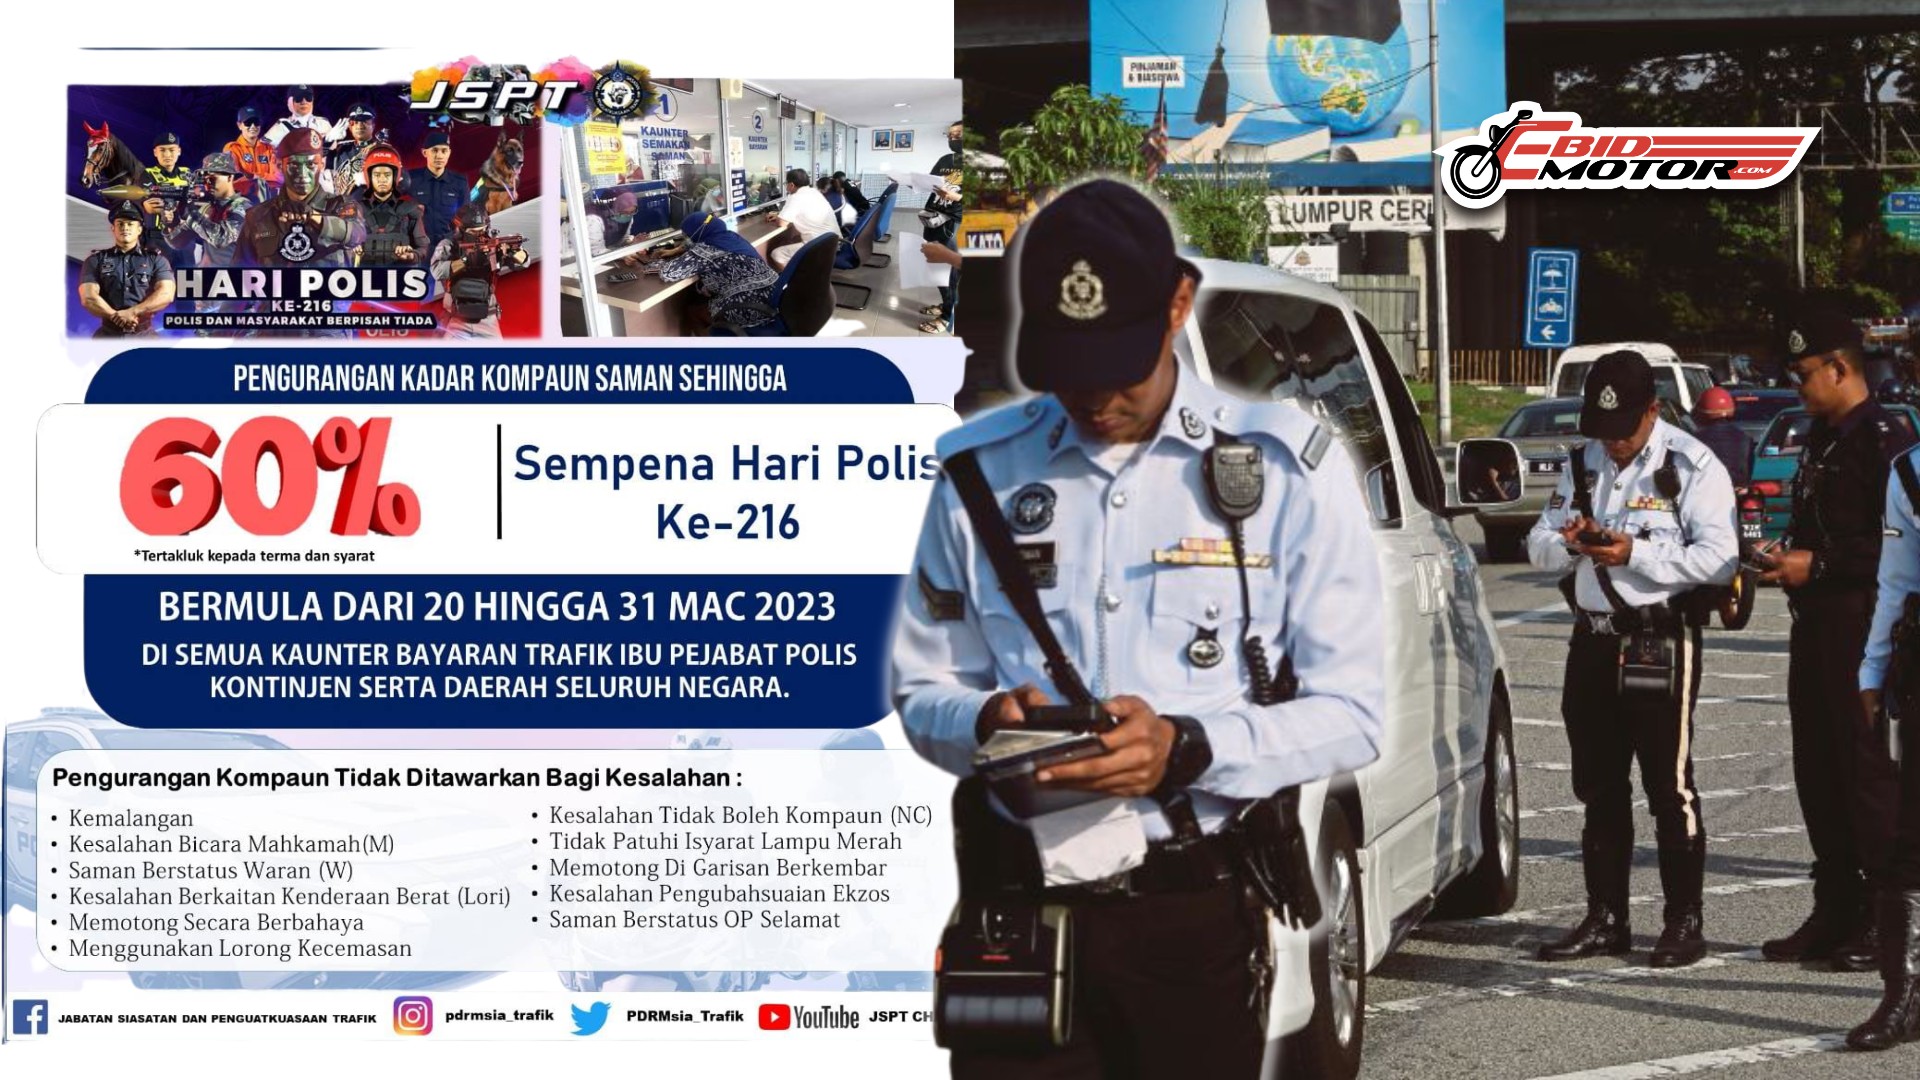 Tawaran Diskaun Saman 60% Sehingga 30 Mac 2023 Sempena Hari Polis Ke-216!